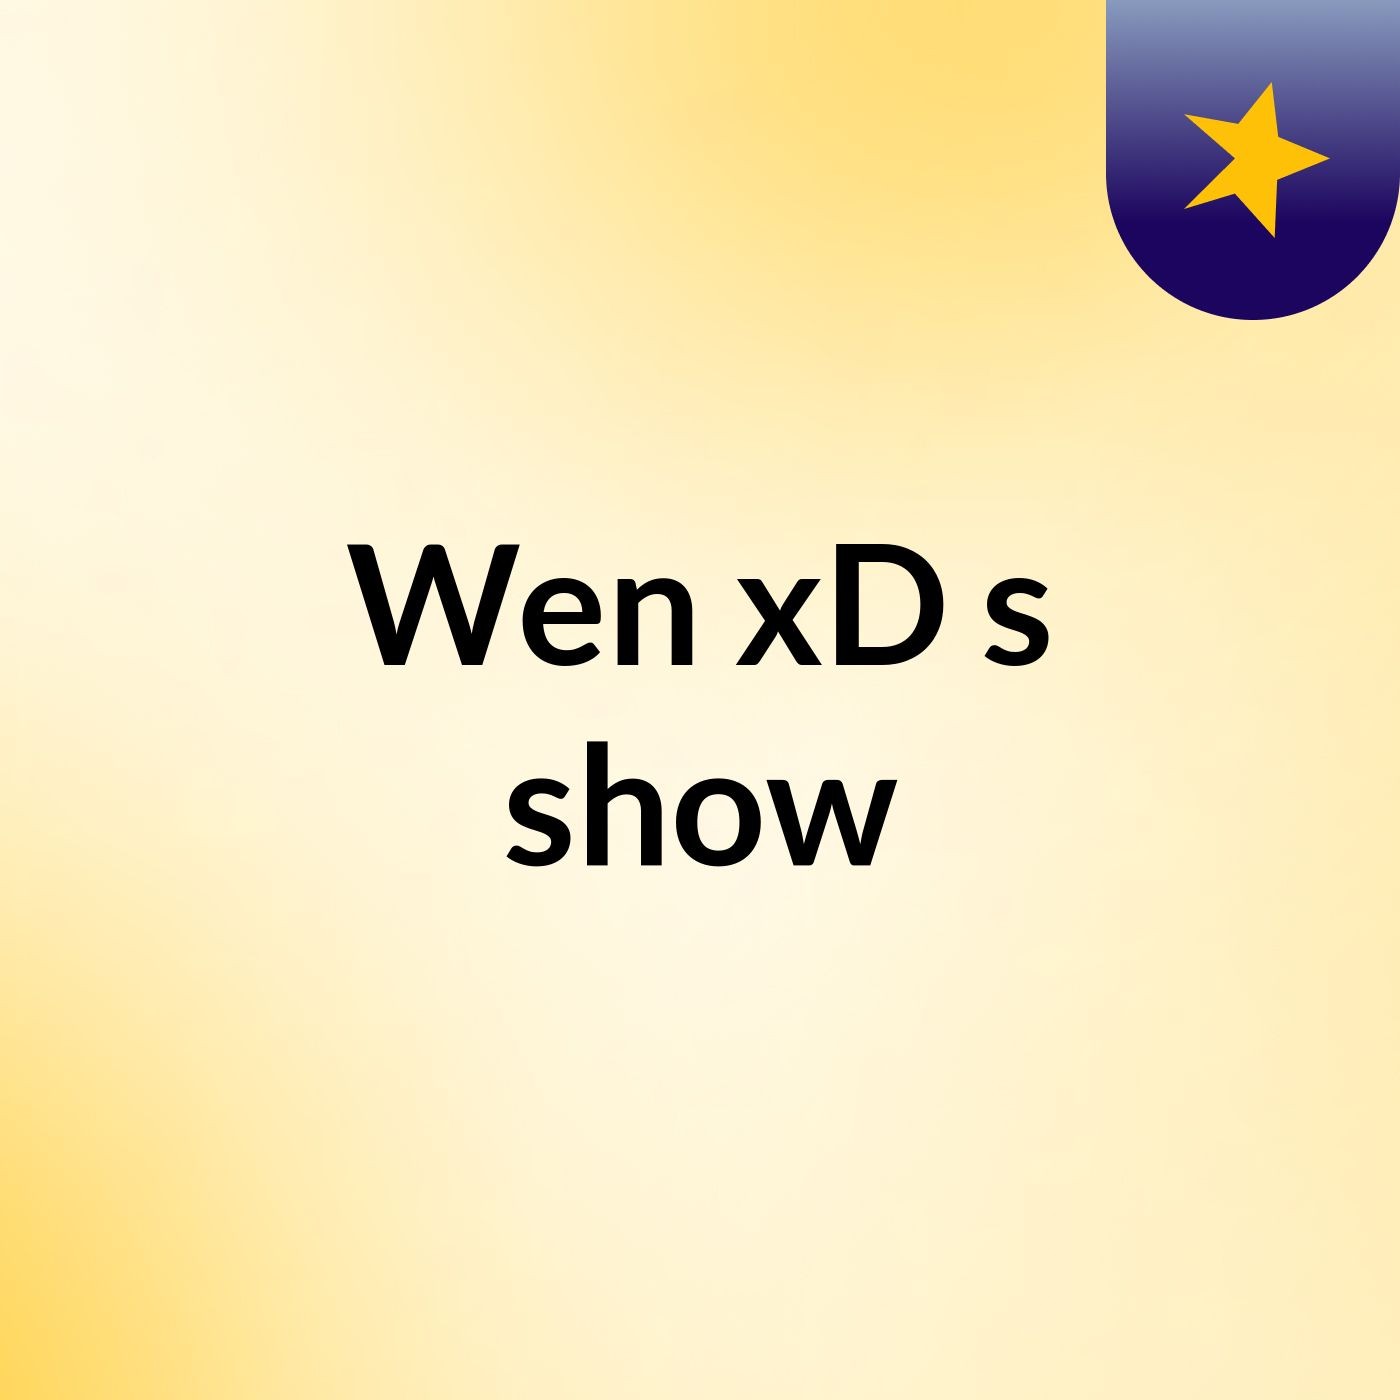 Wen xD's show